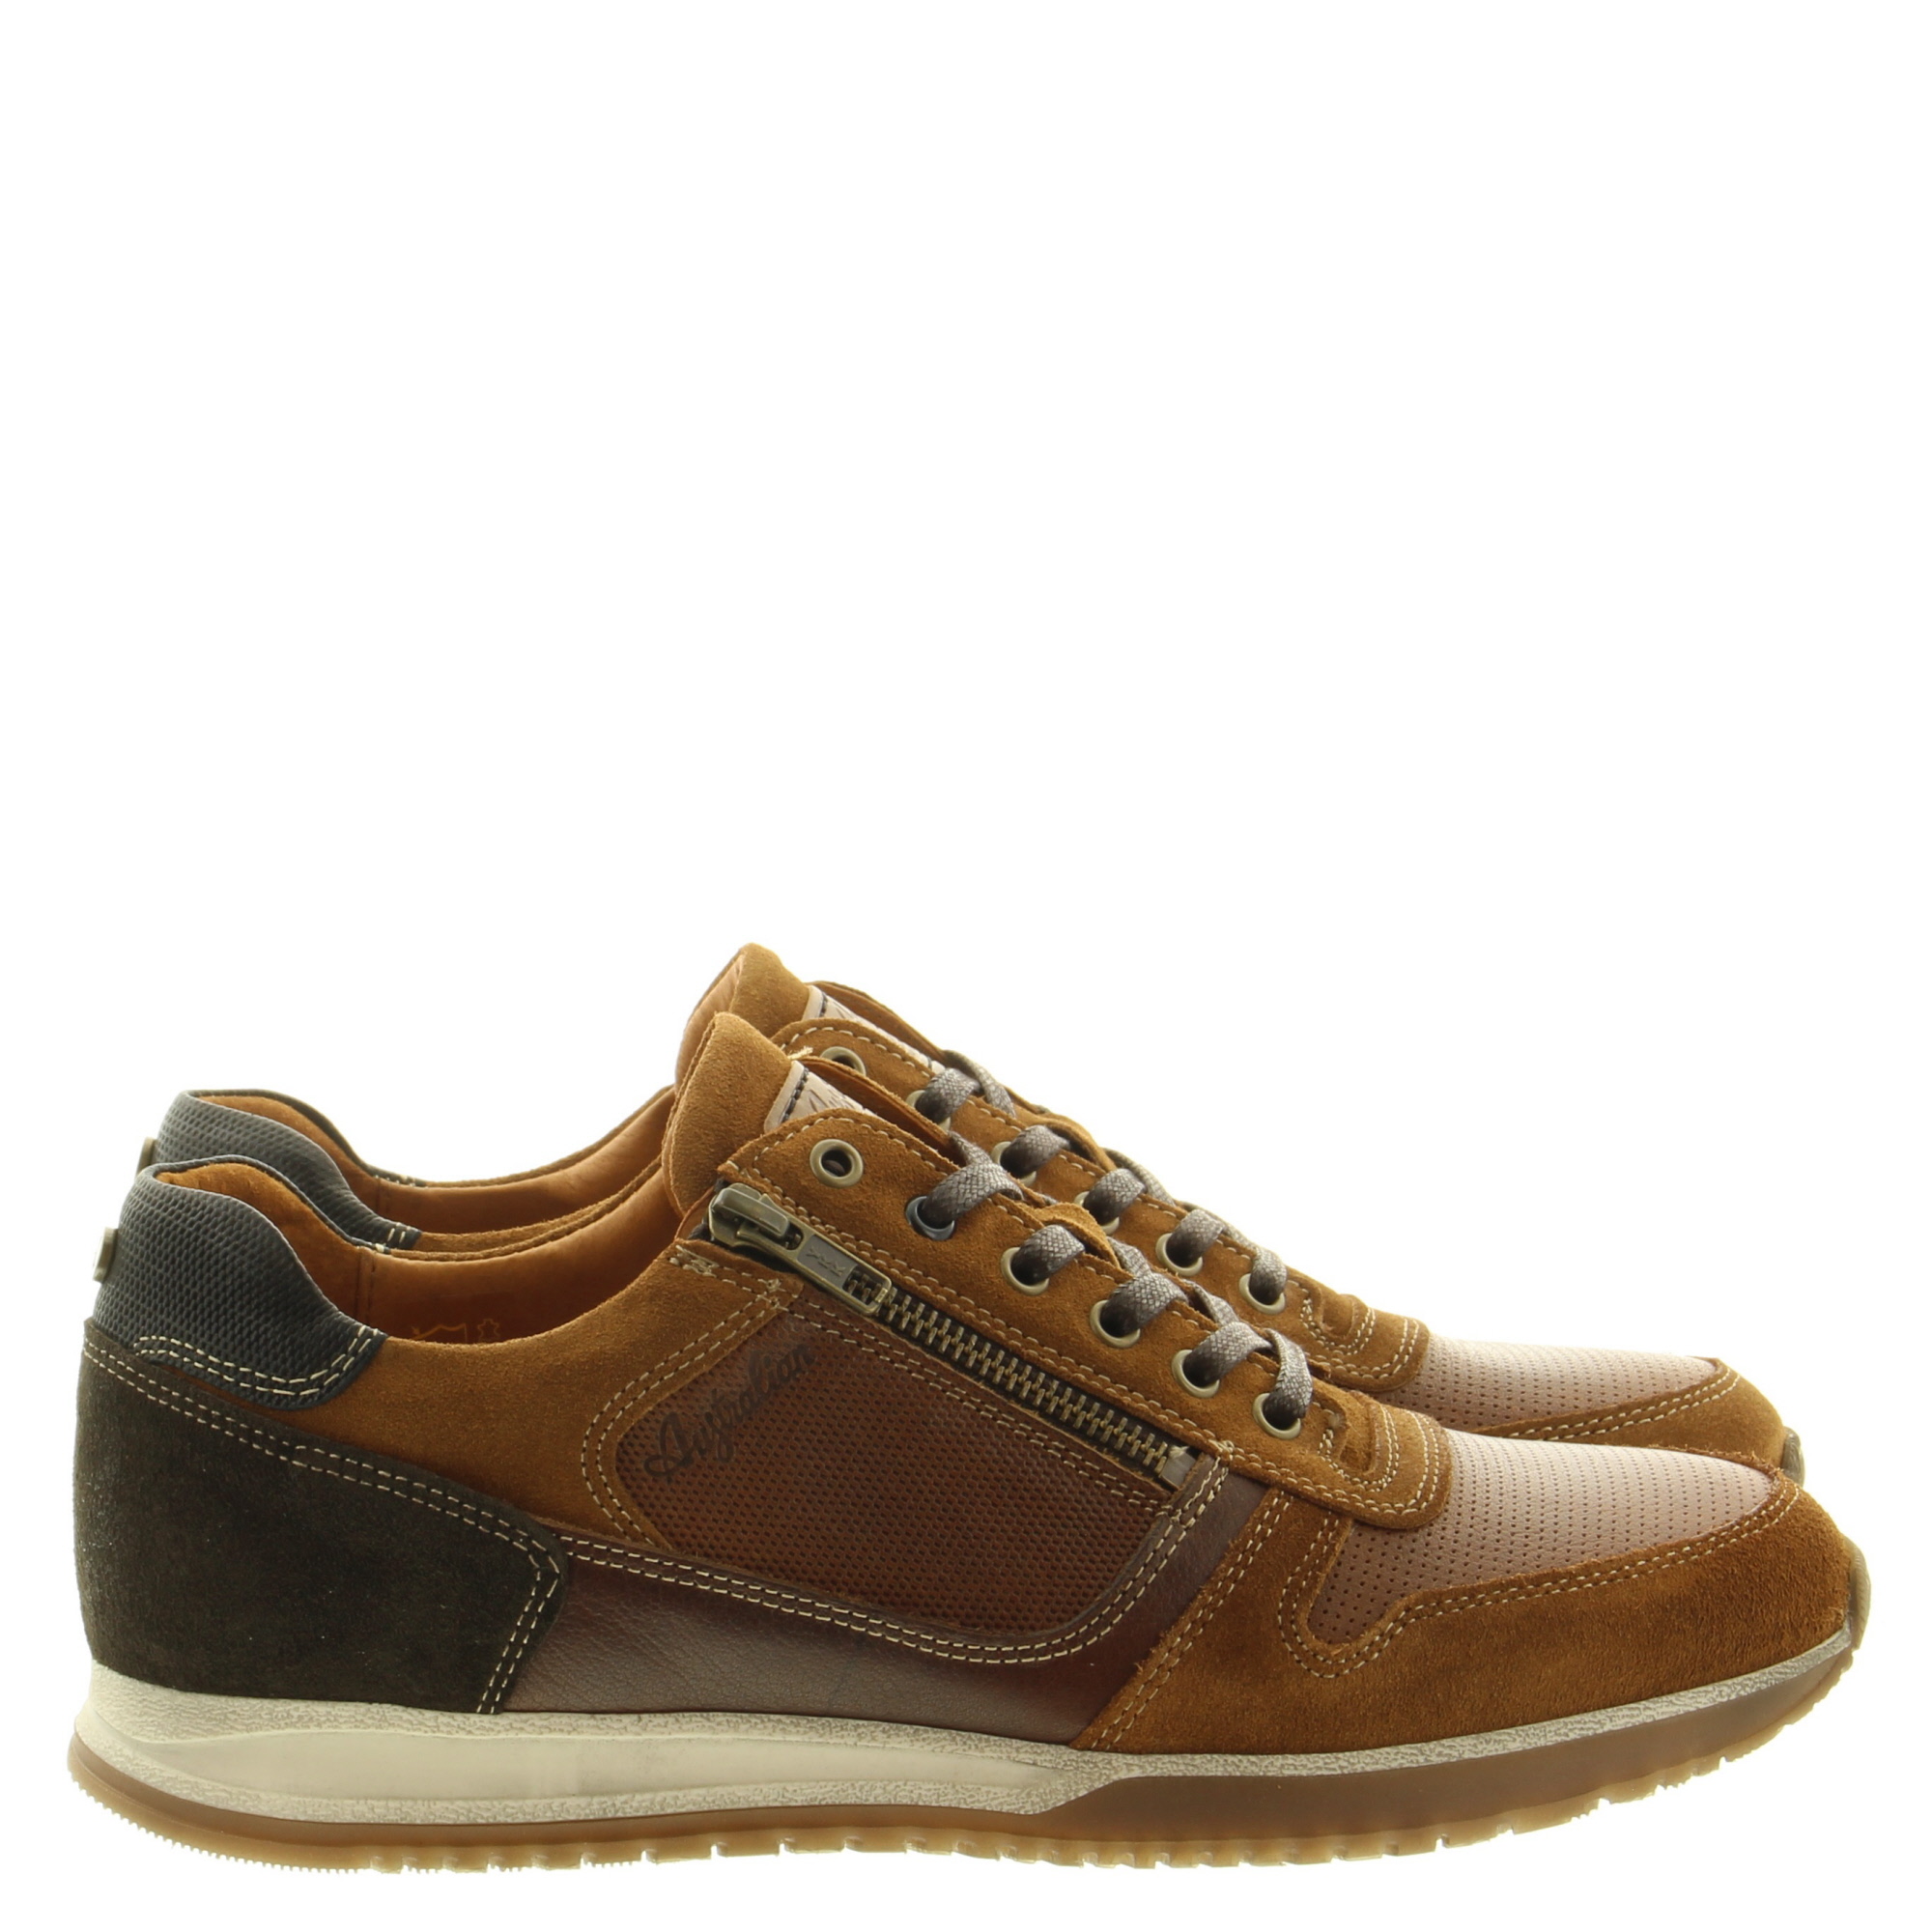 Australian Footwear Browning 15.1473.01 T18 Tan Brown Black